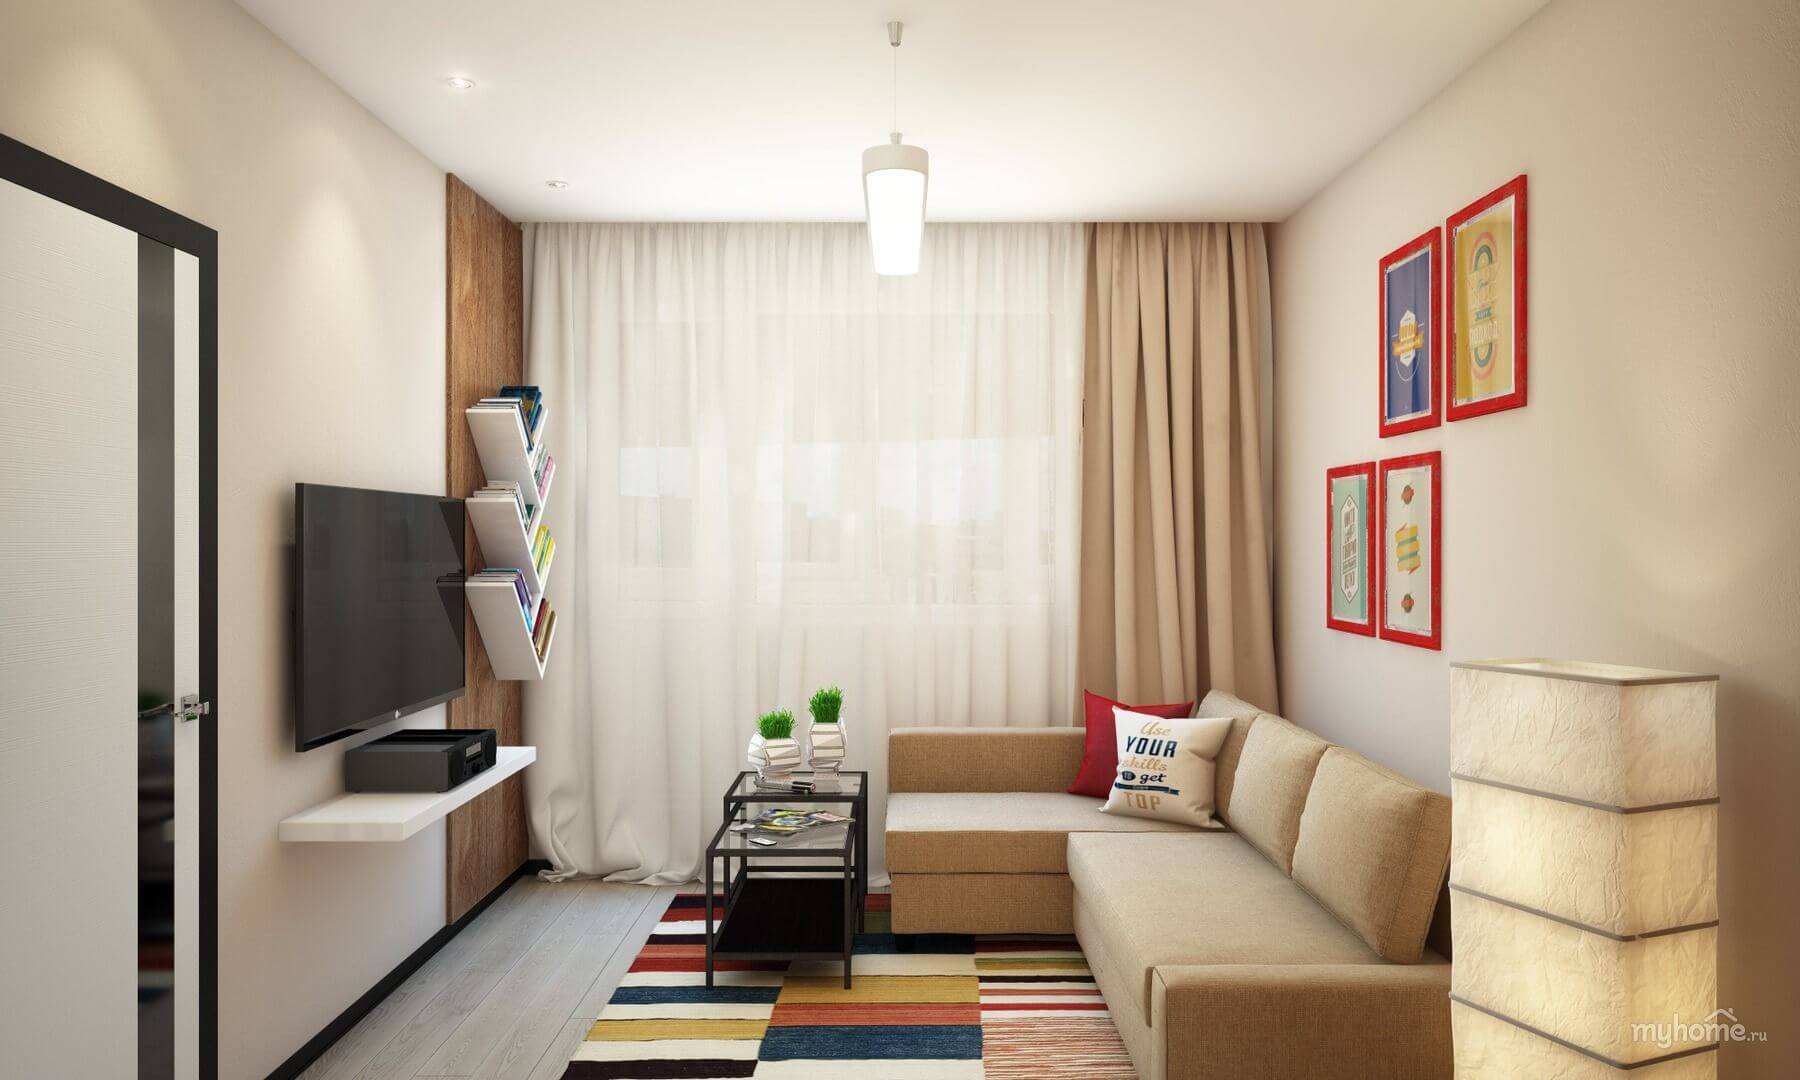 Дизайн маленькой комнаты (12 м2) с диваном. - iloveremont.ru